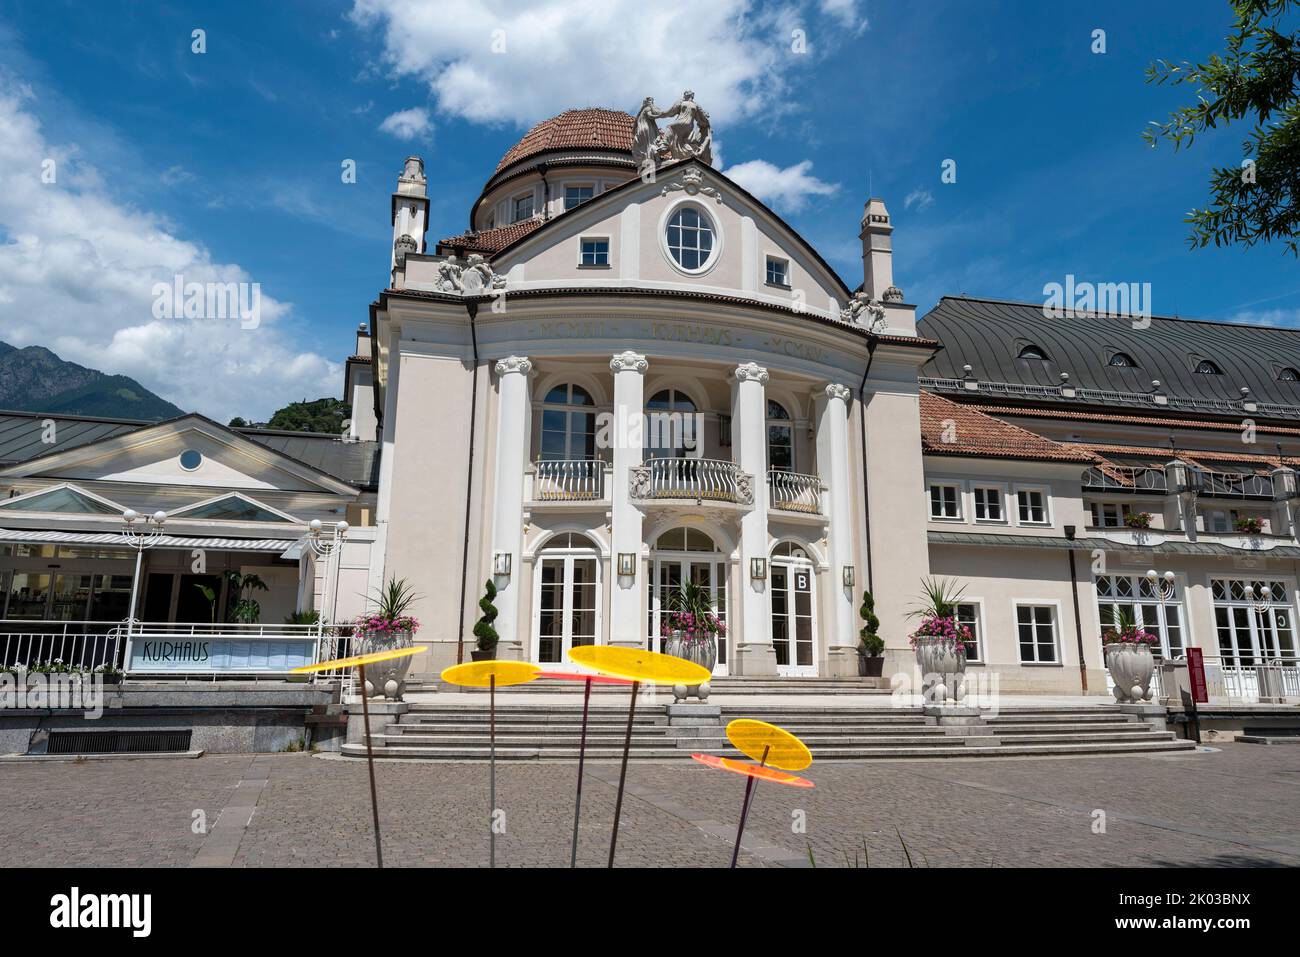 Kurhaus, Merano, South Tyrol, Italy Stock Photo